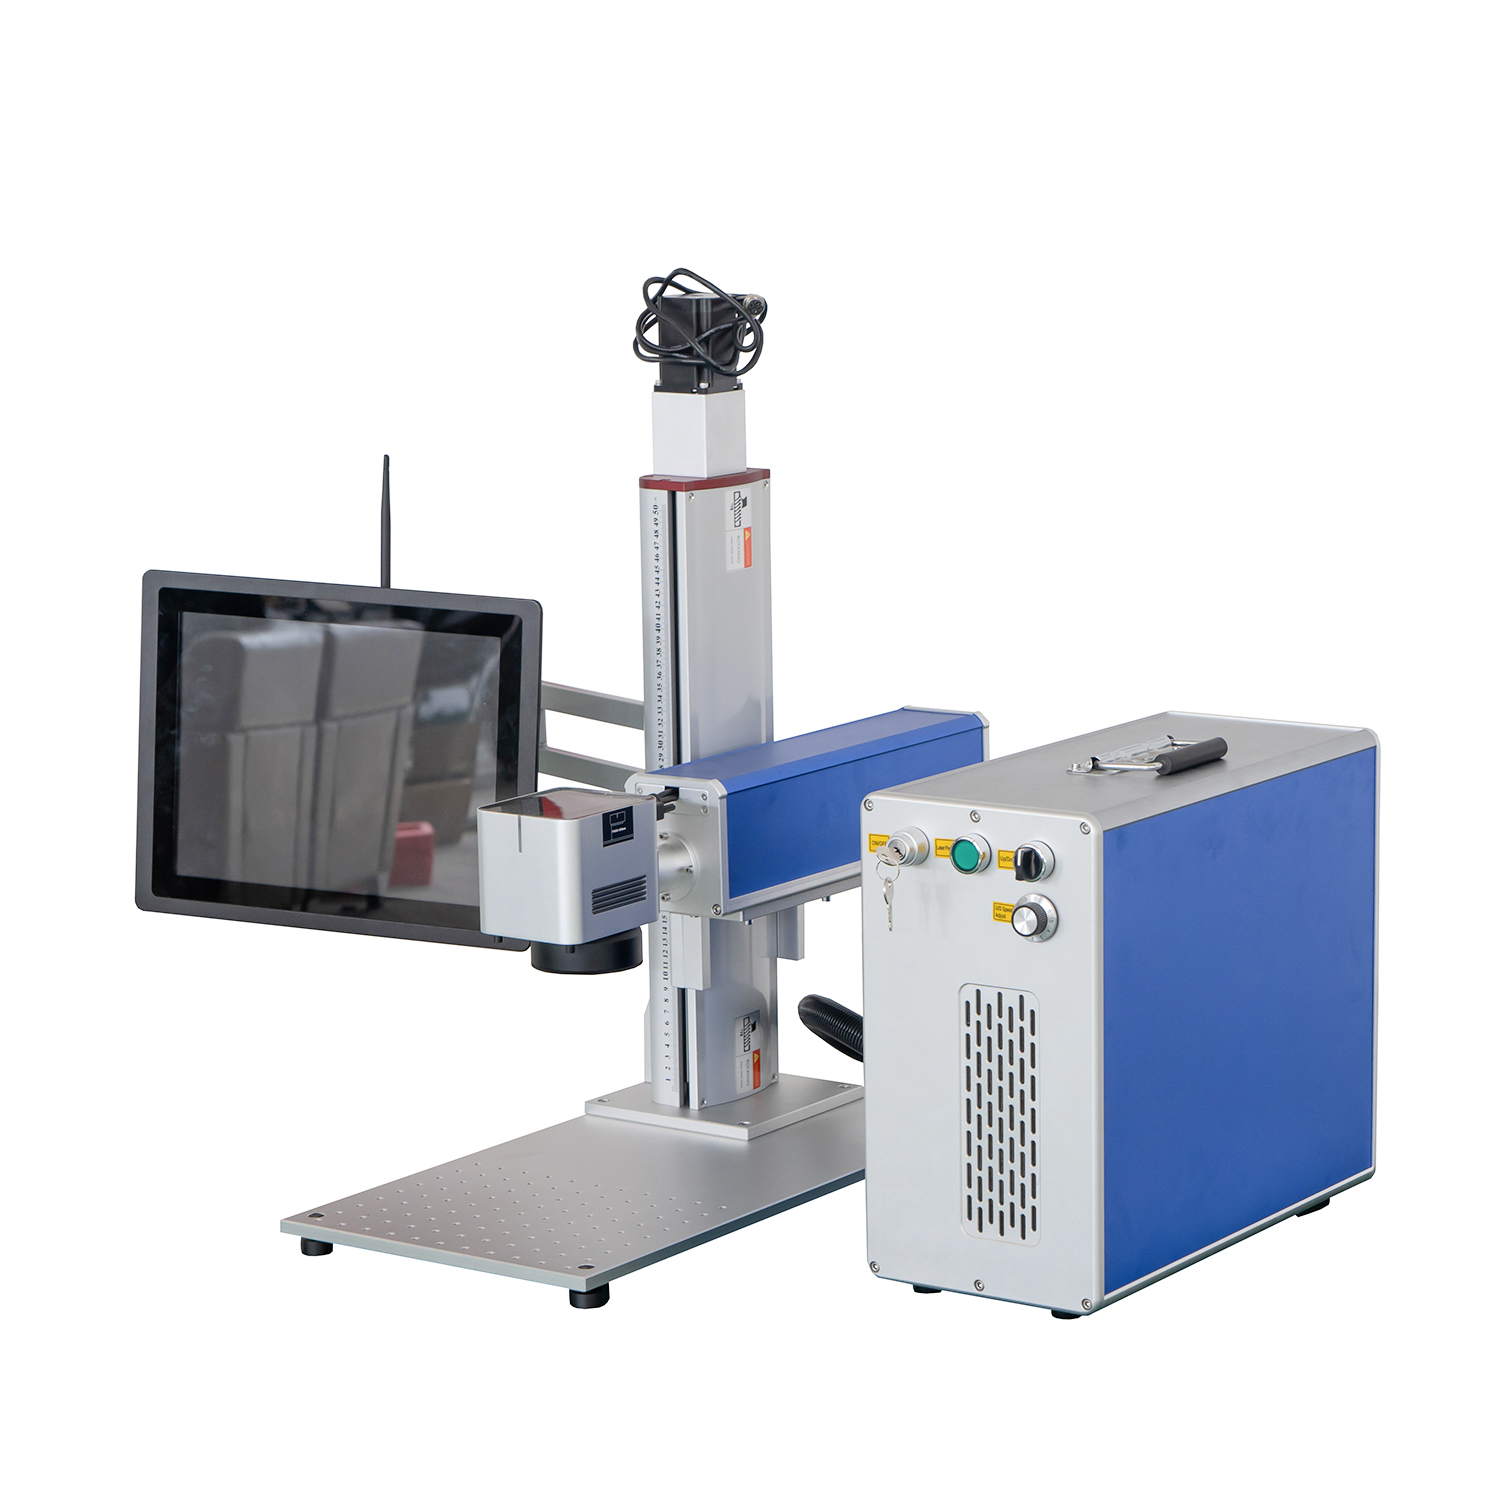 Touchscreen Computer IPG JPT RAYCUS MAX CNC Fiber Laser Marker Graveur Machine voor Metaal Plastic